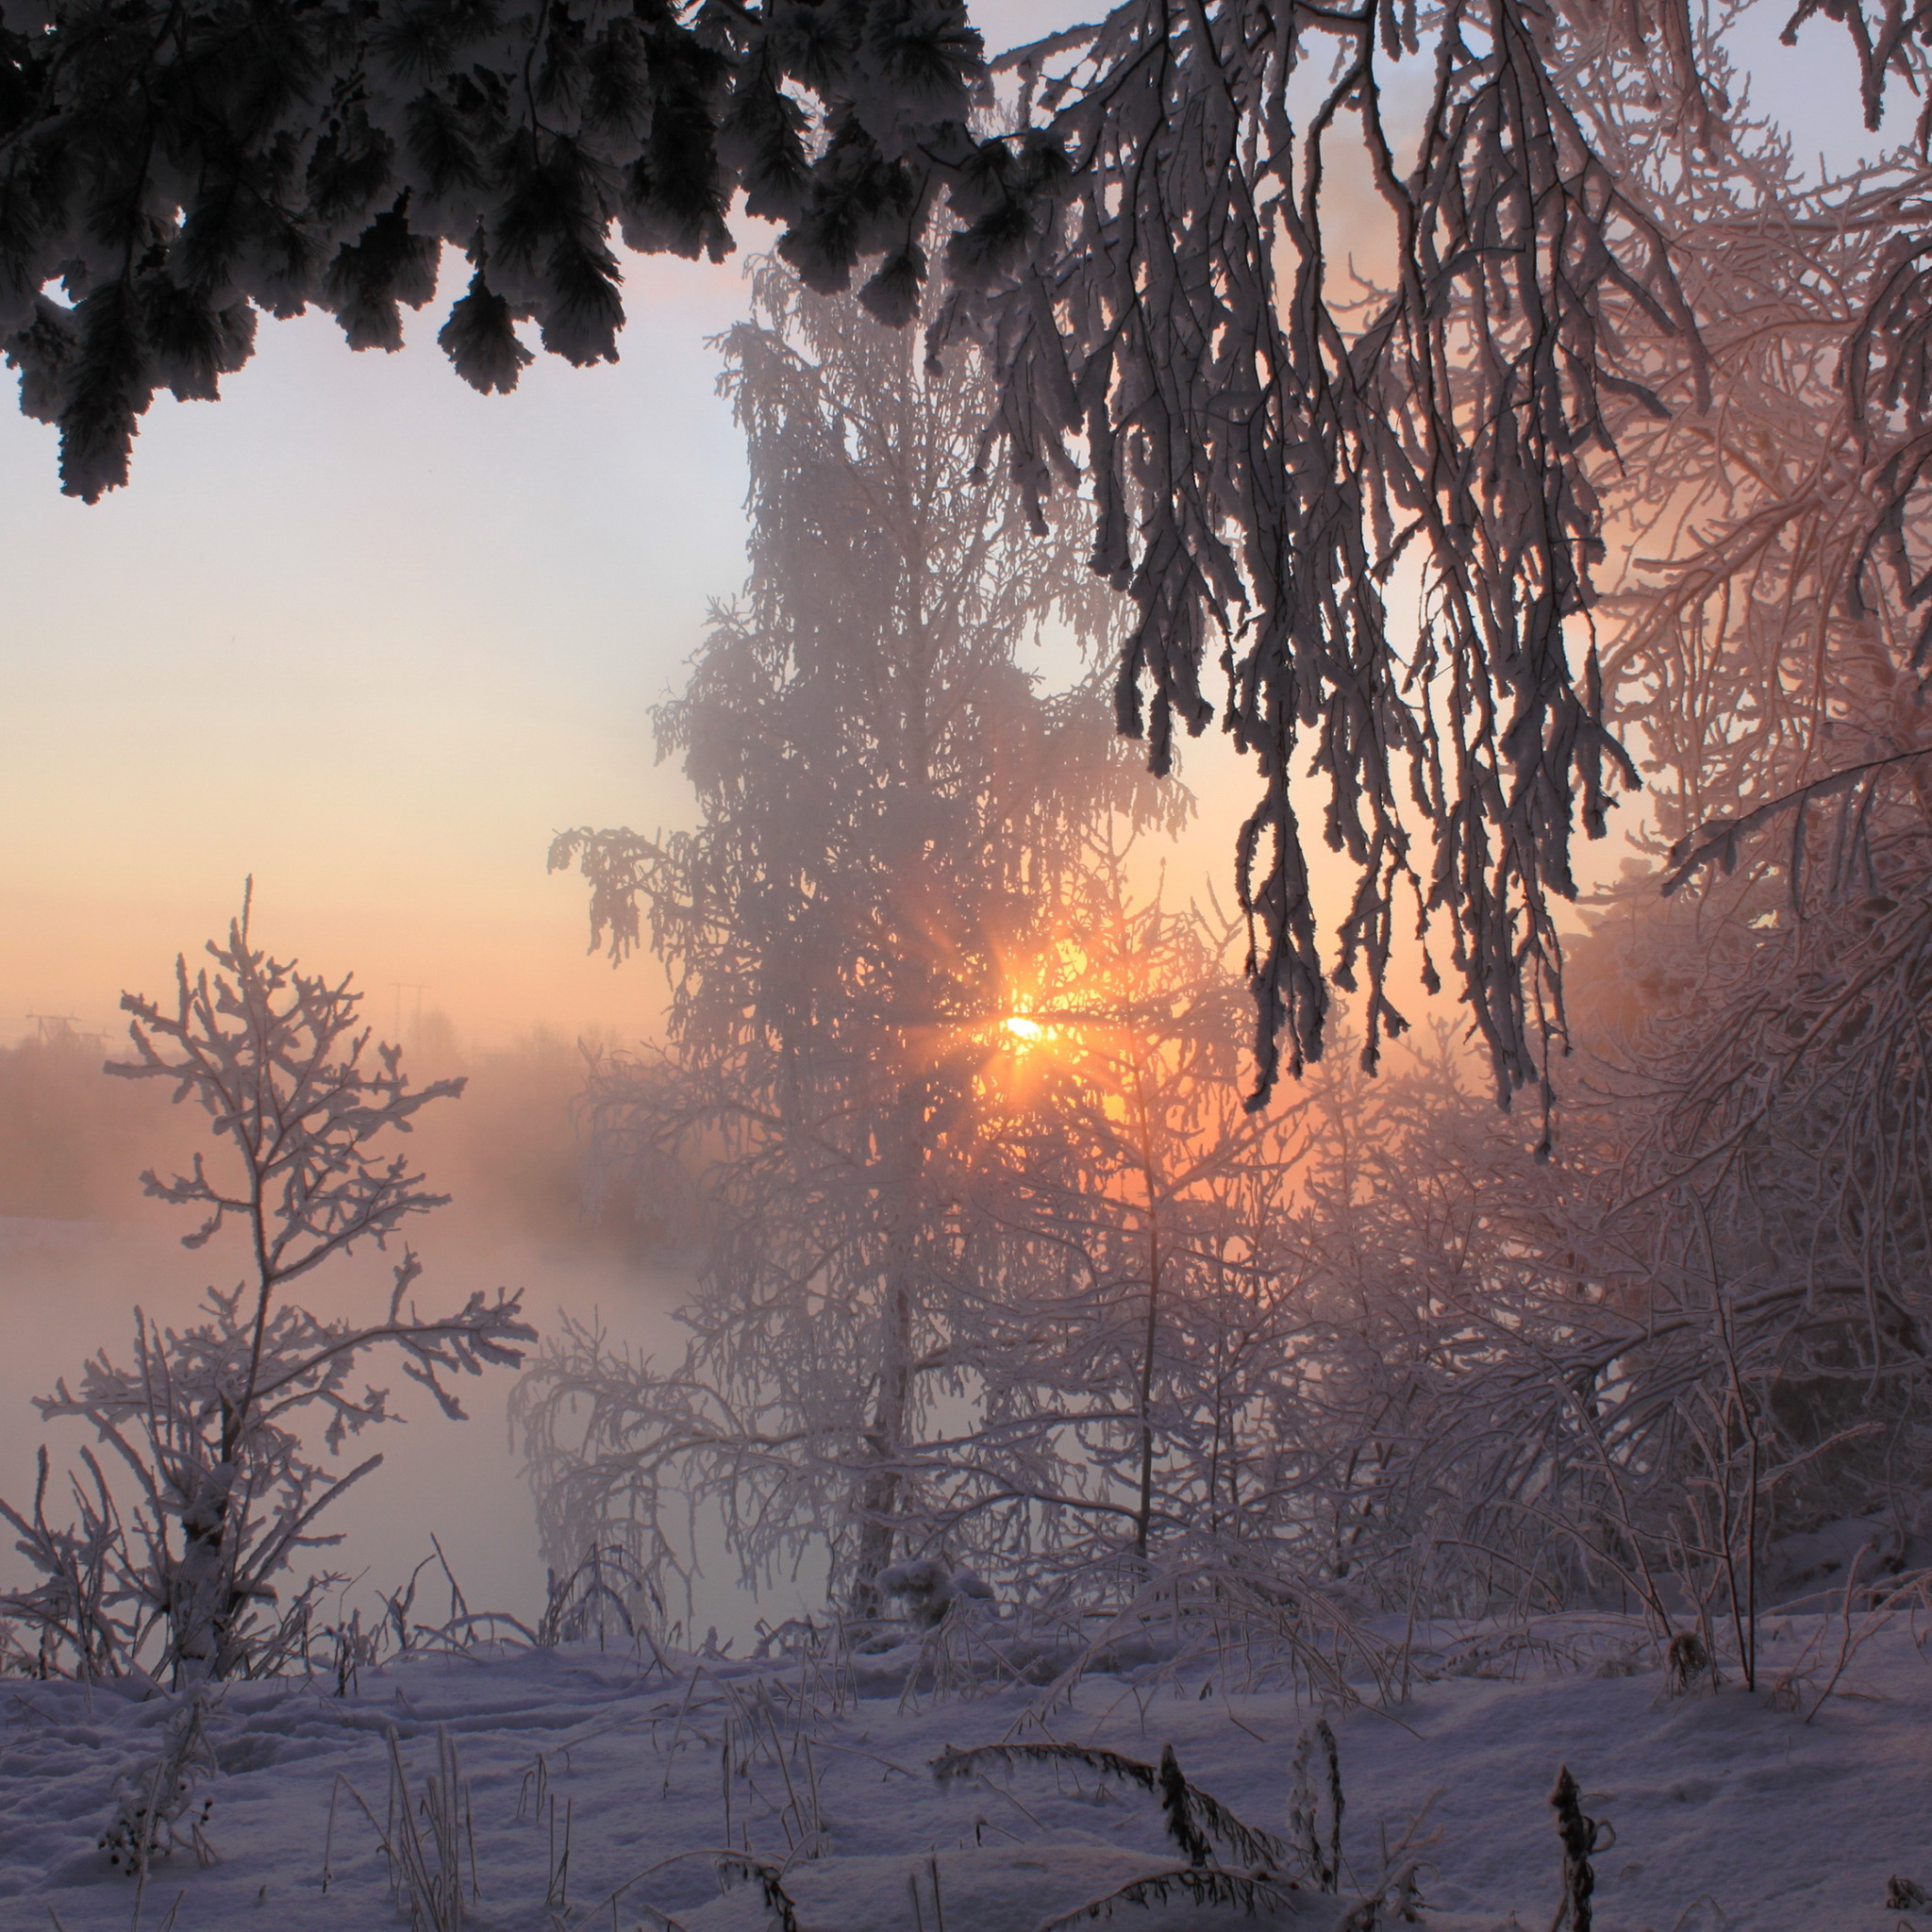 Фф и в морозном лесу навеки останусь. Морозное утро в лесу. Морозное утро. Утро зимой. Снежное морозное утро.